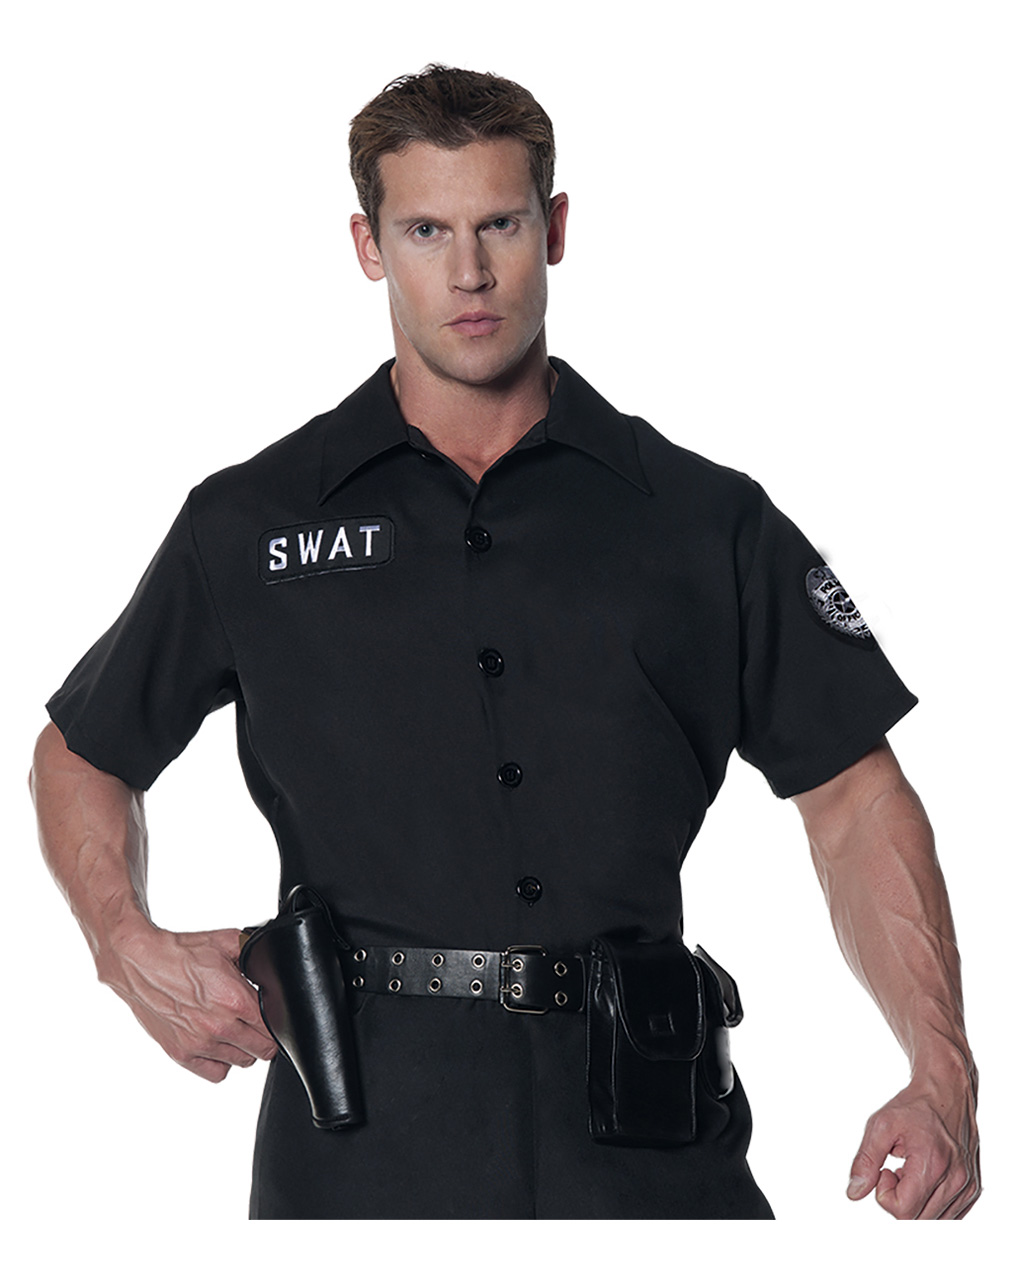 swat hemd swat shirt berufsuniform unifor kostuemzubehoer 38766 01